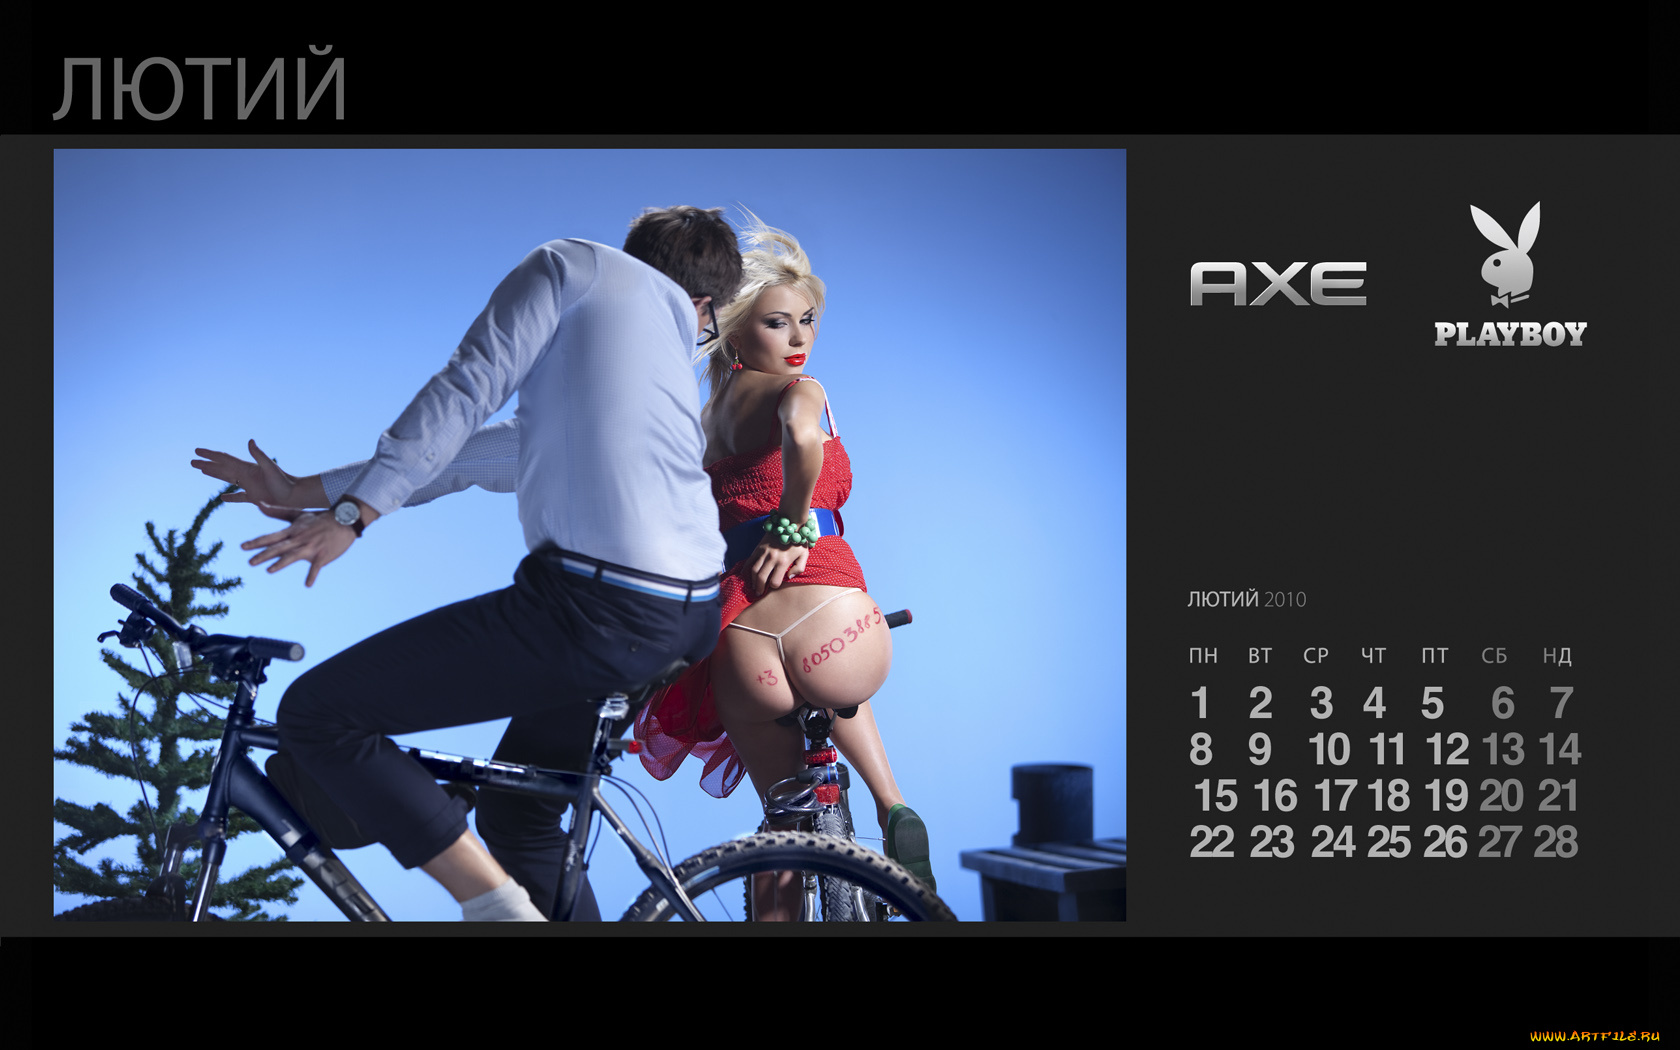 axe, календари, девушки, на, велосипеде, попа